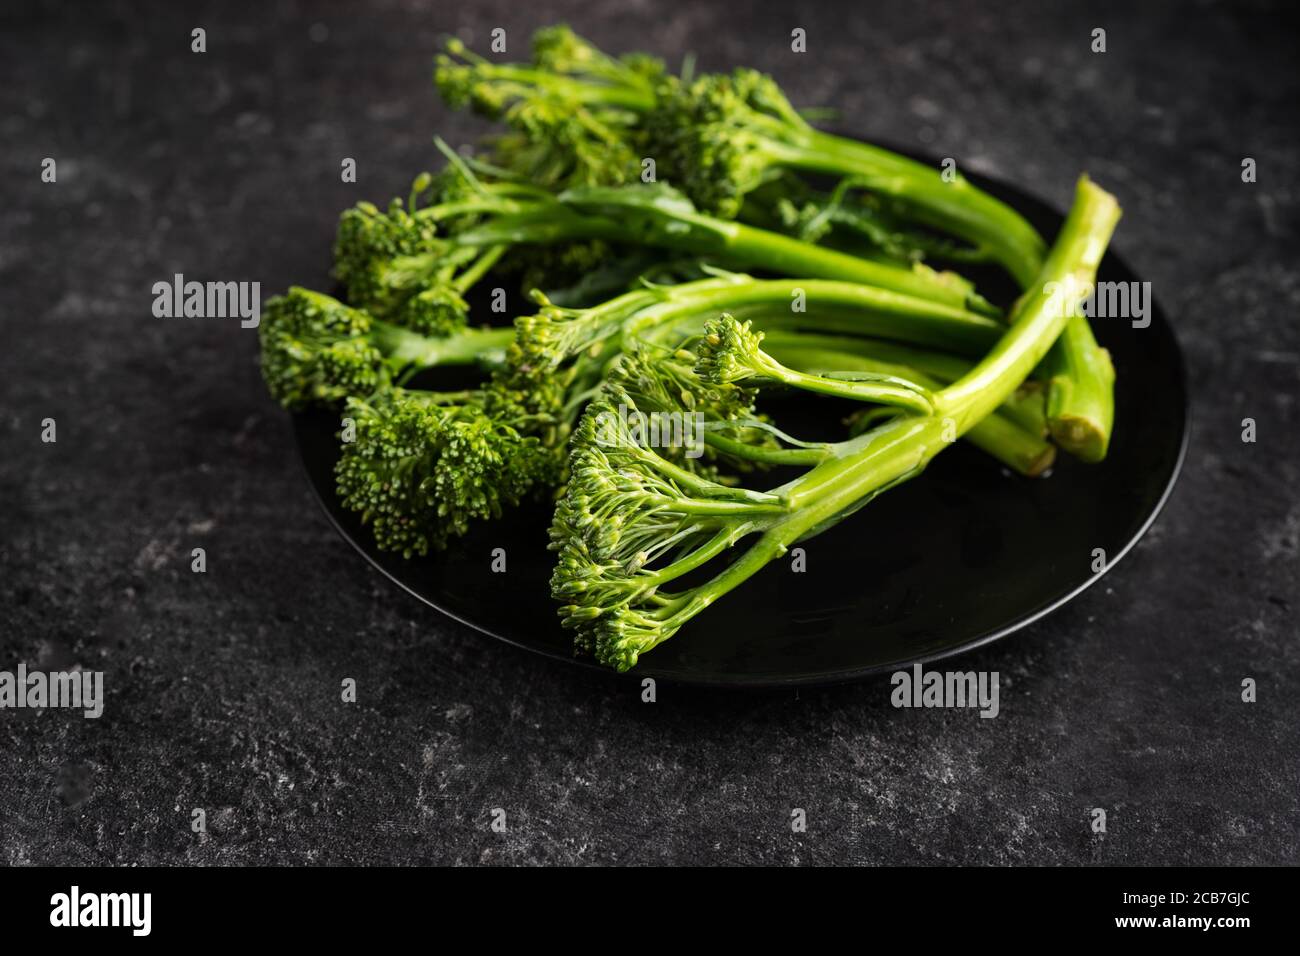 Cerca de un nuevo tipo de col llamado broccolini Foto de stock